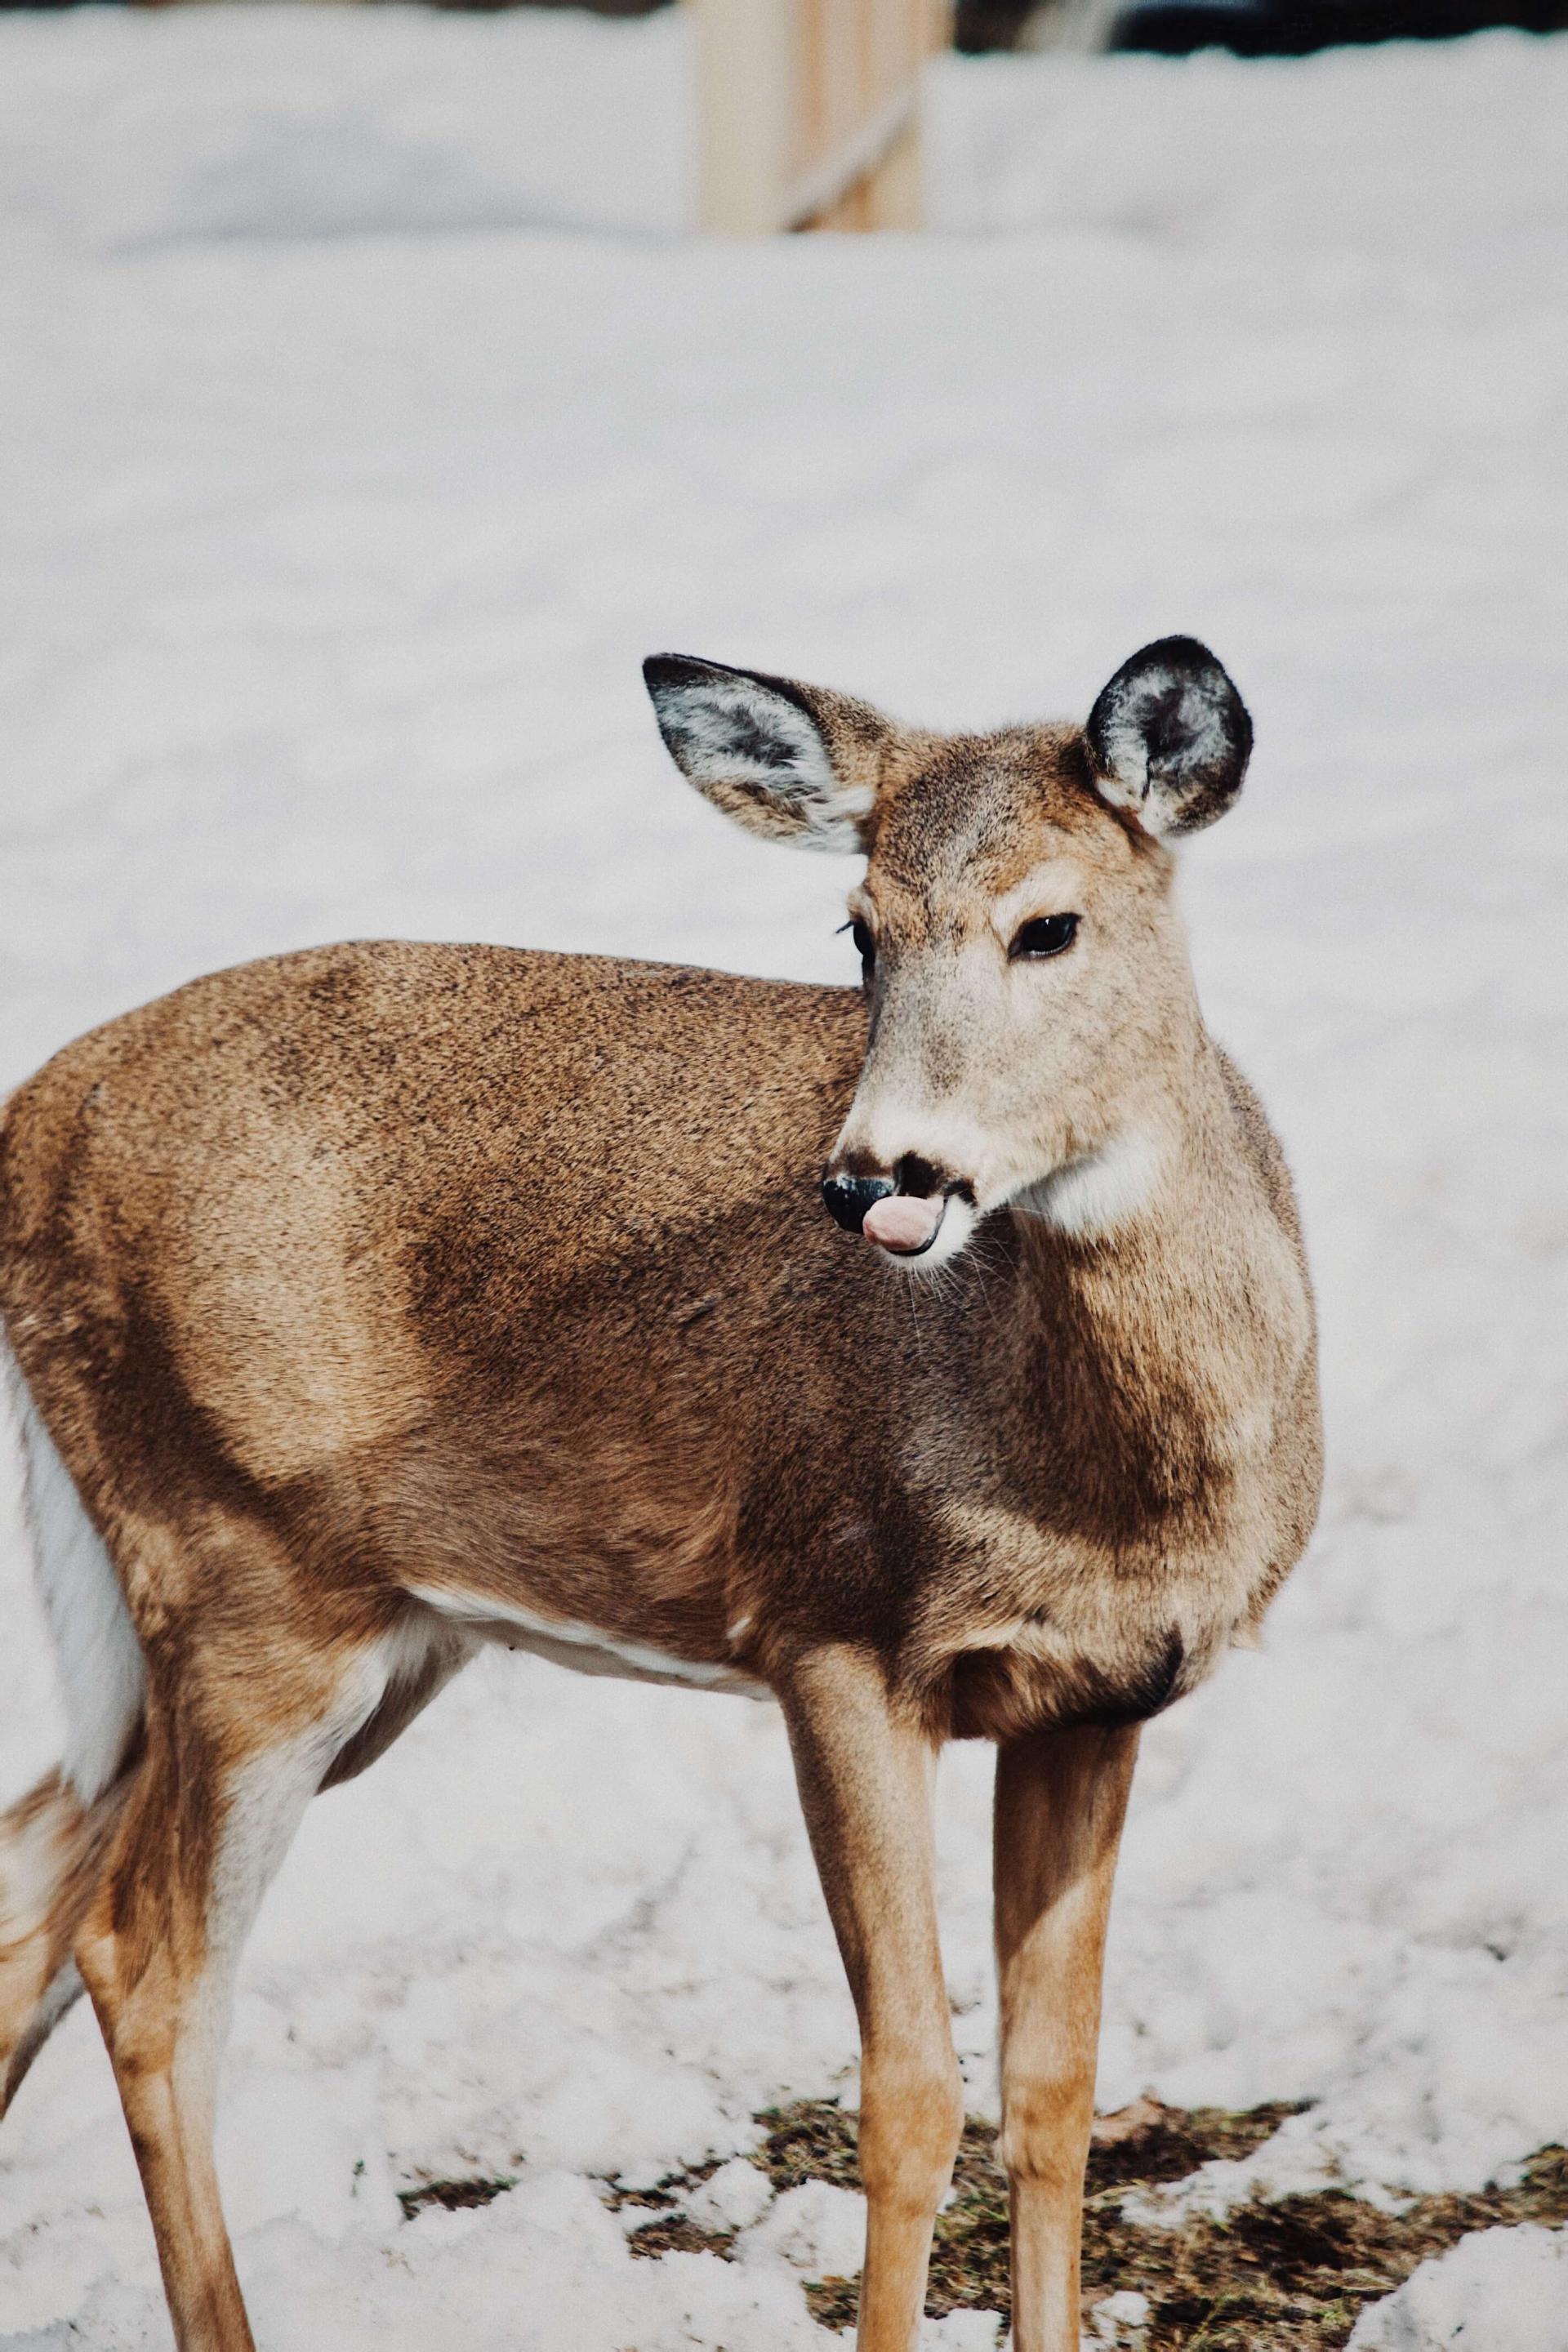 deer standing in the snow